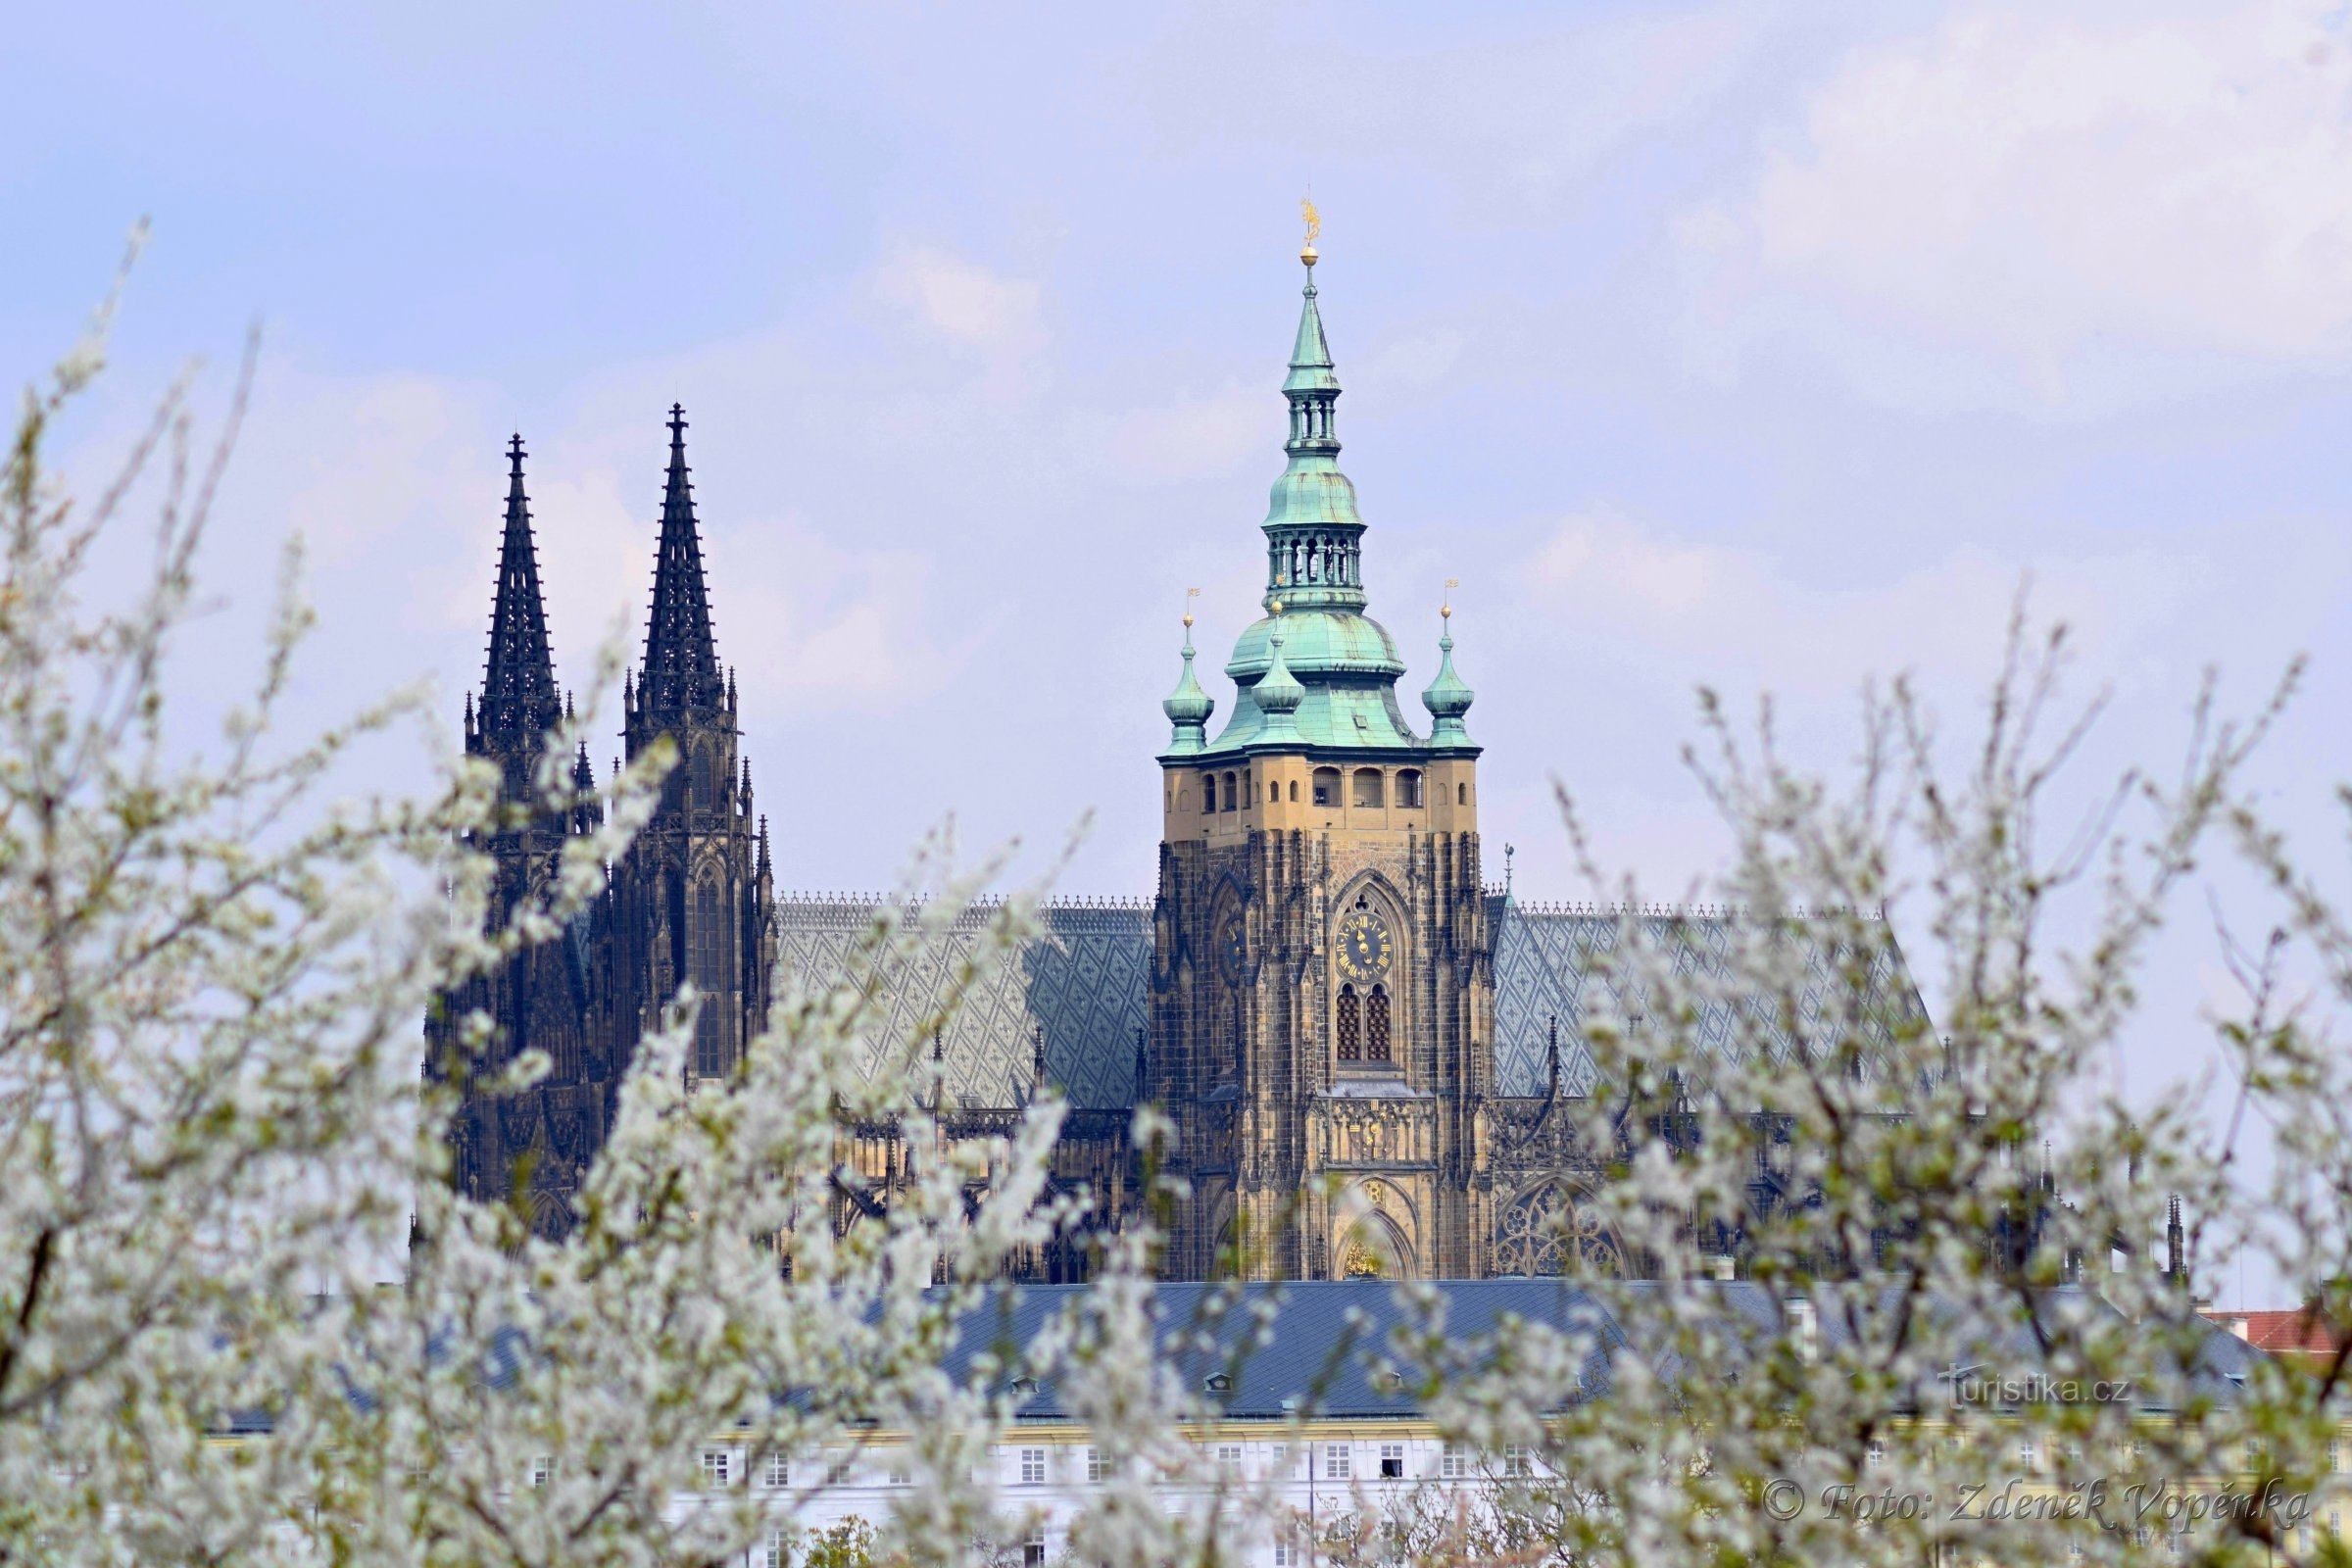 Petřín - spomladanski sprehod po cvetoči Pragi.